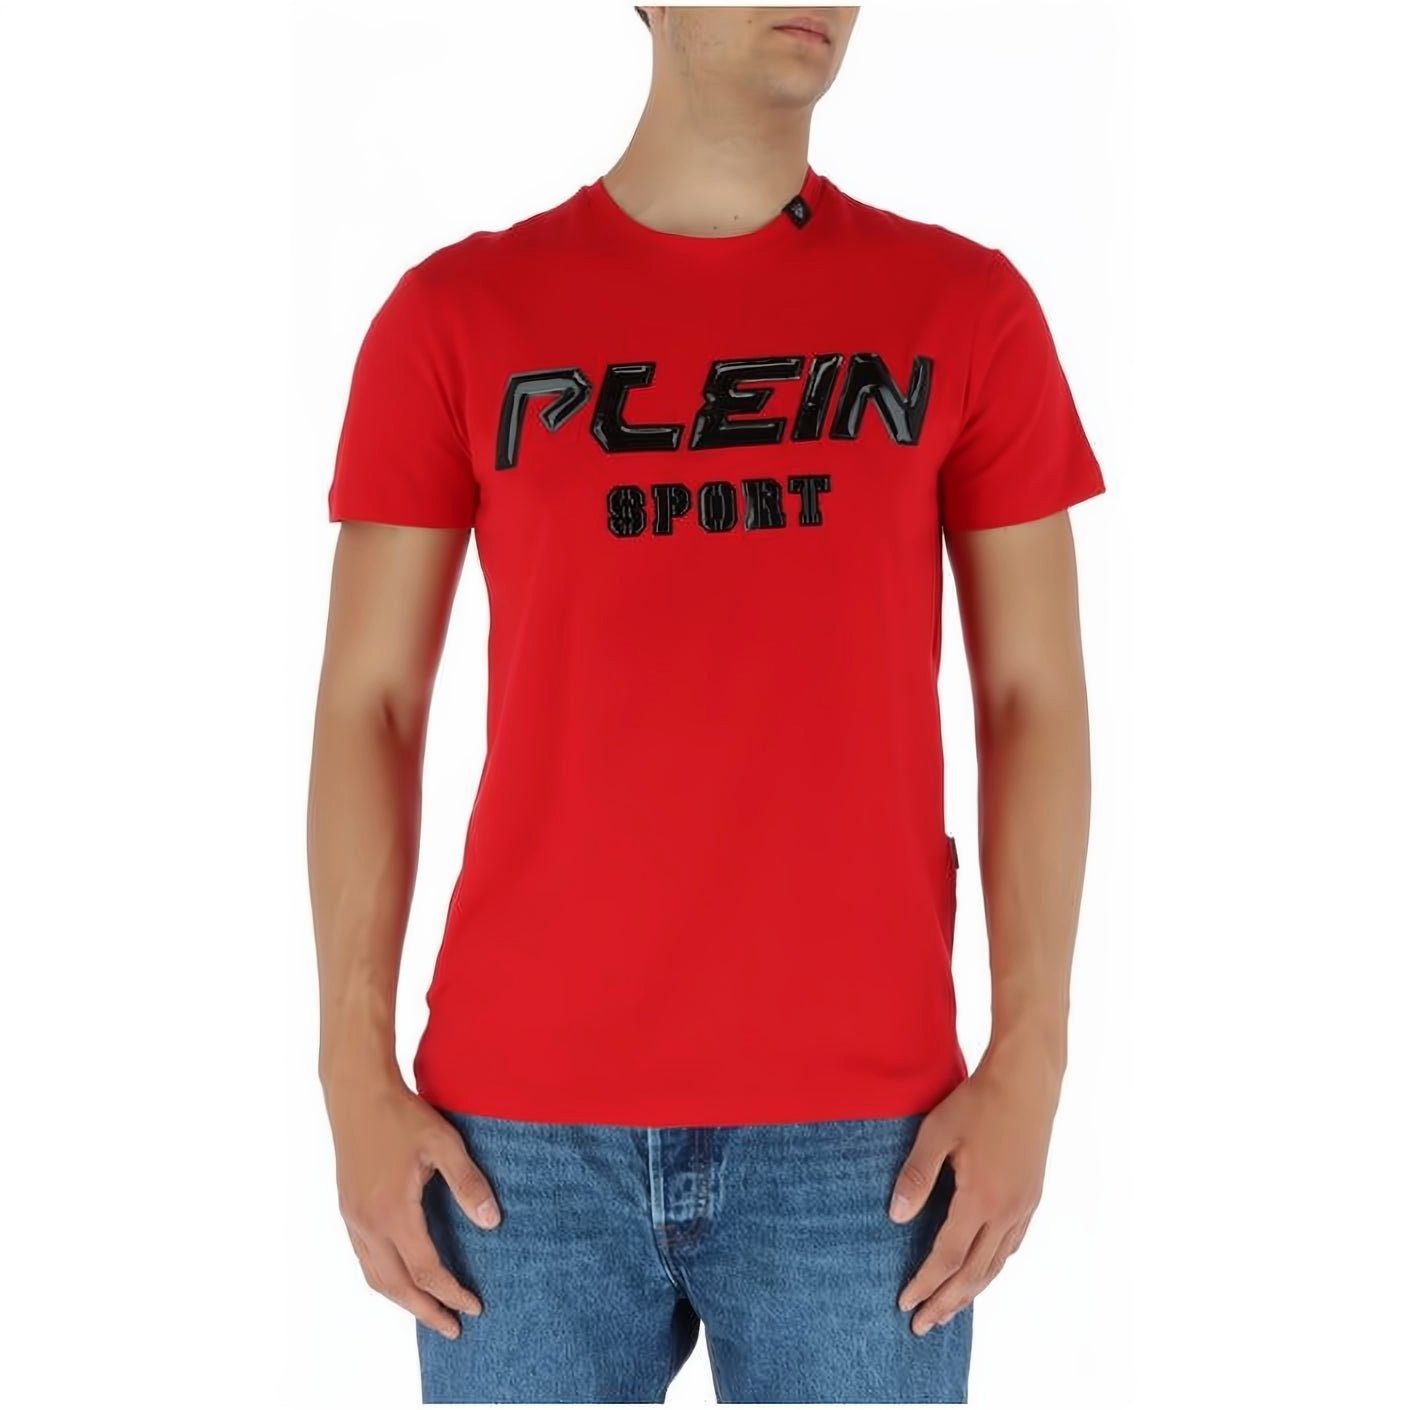 hoher vielfältige T-Shirt Stylischer NECK SPORT Farbauswahl PLEIN Look, Tragekomfort, ROUND